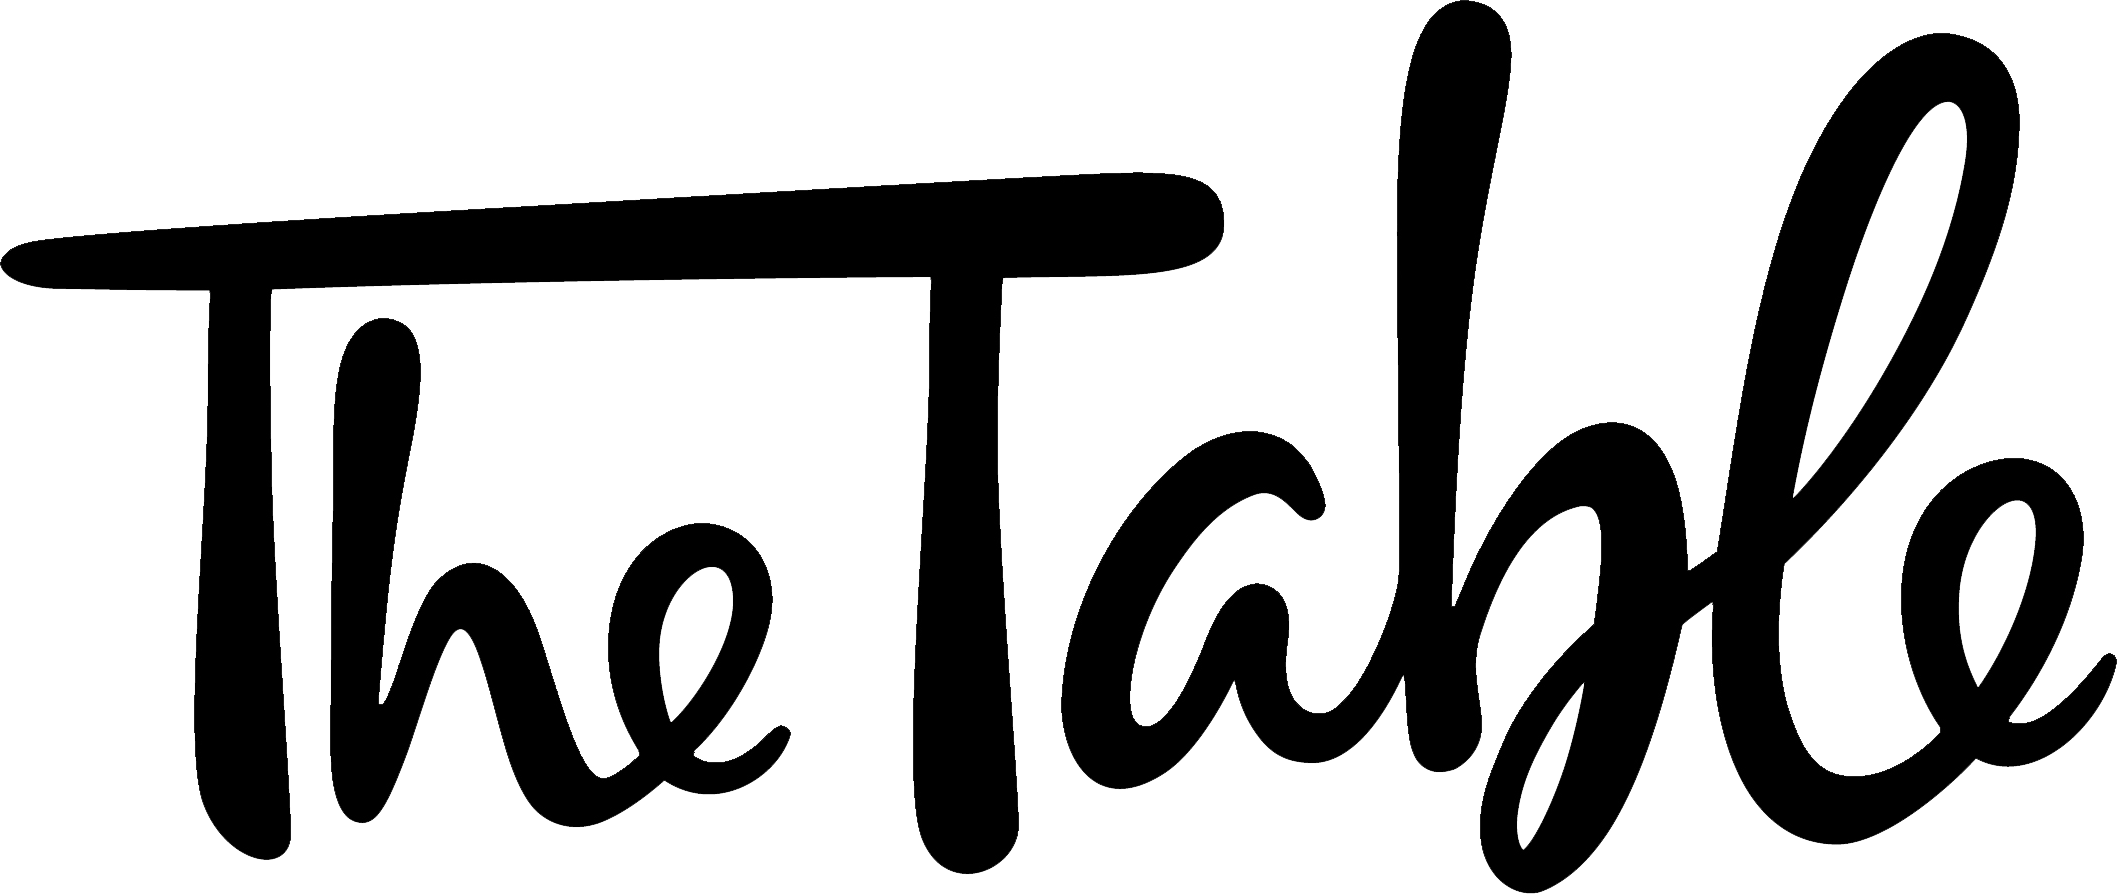 Black and White Restaurant Logo - The Table (restaurant) logo.png